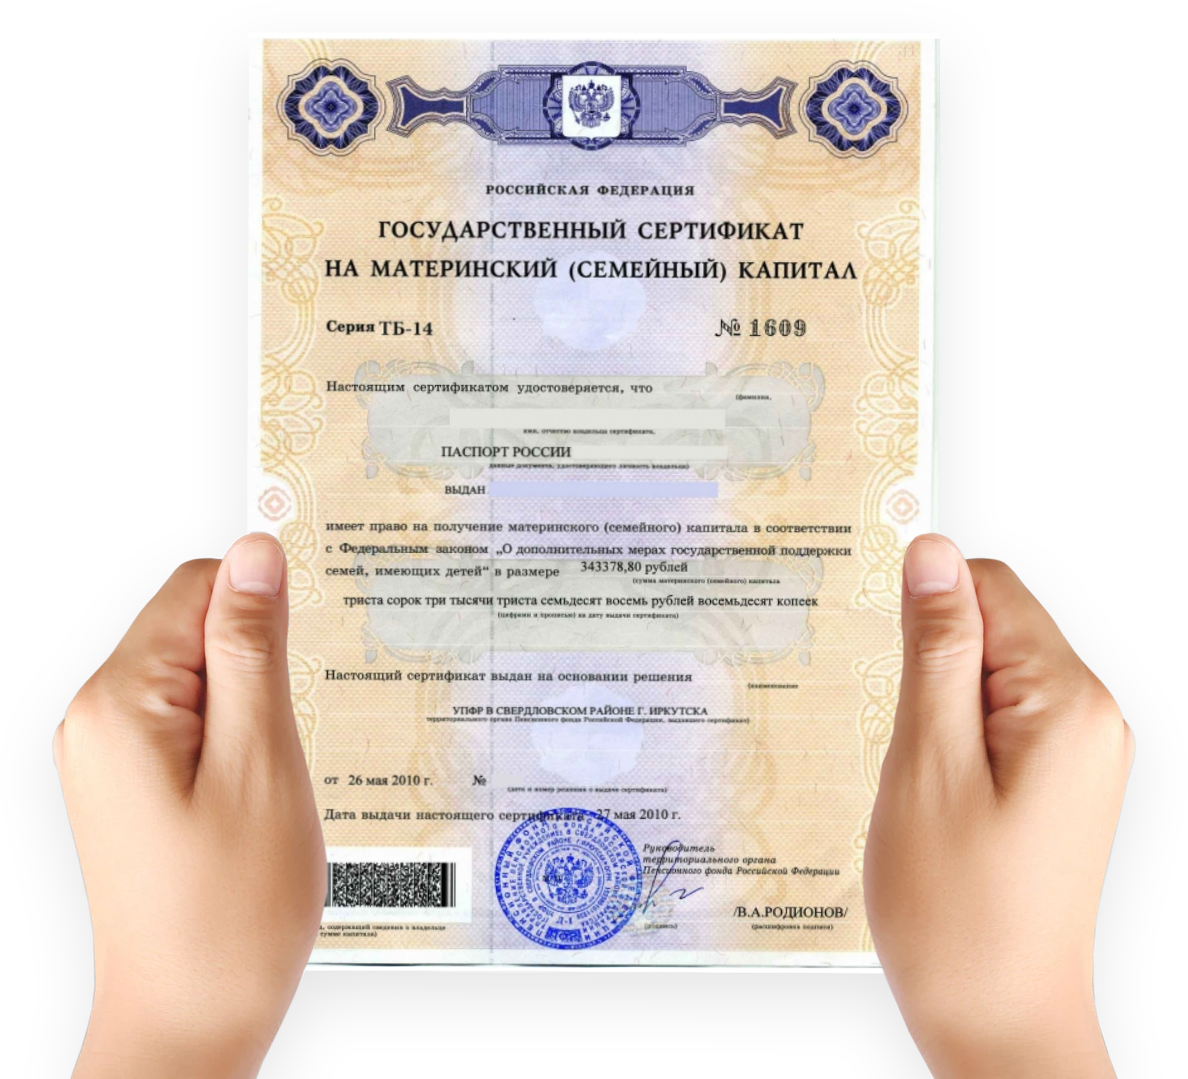 Как выглядит сертификат на мат капитал. Как выглядит мат капитал сертификат в электронном виде. Как выглядит документ на материнский капитал. Материнский капитал на второго ребенка сертификат как выглядит.